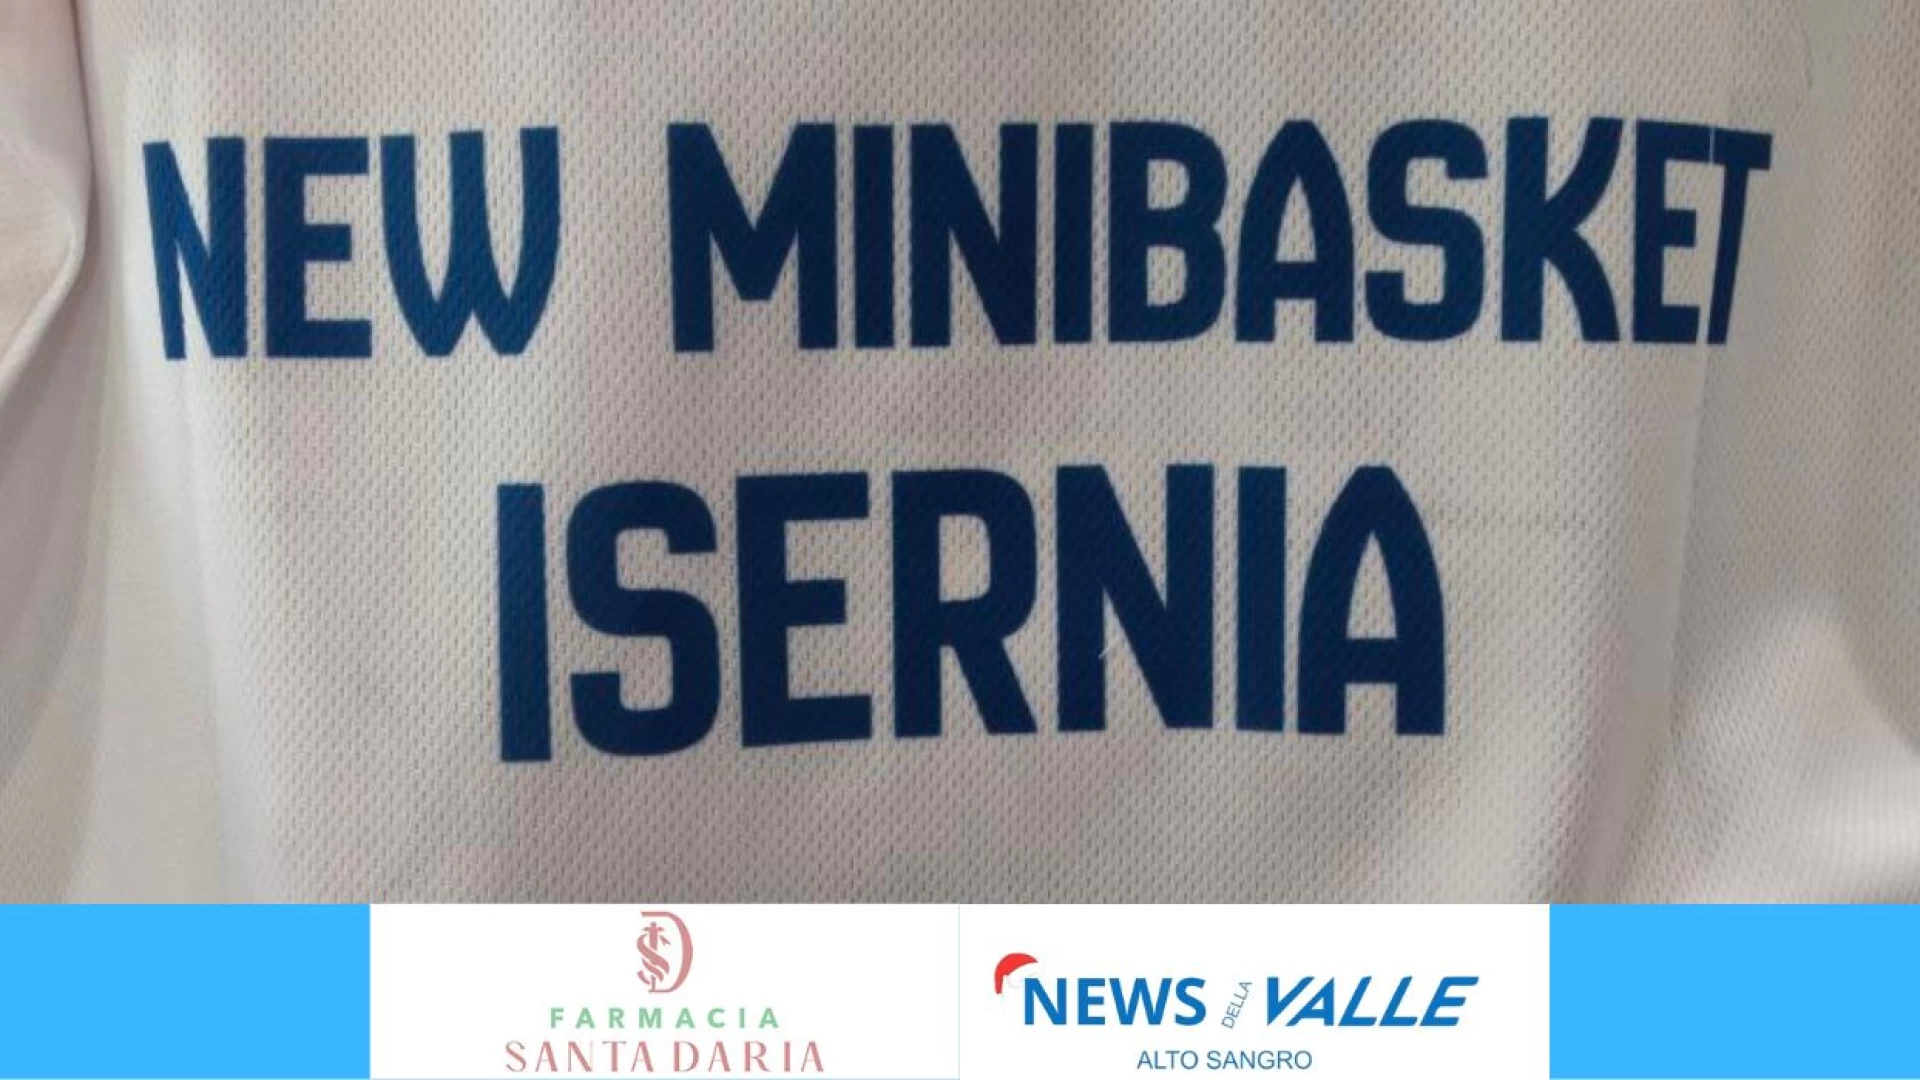 La New Minibasket Isernia “invade” il Pala Fraraccio. Questa mattina la festa di fine anno della società isernina. Guarda il servizio.